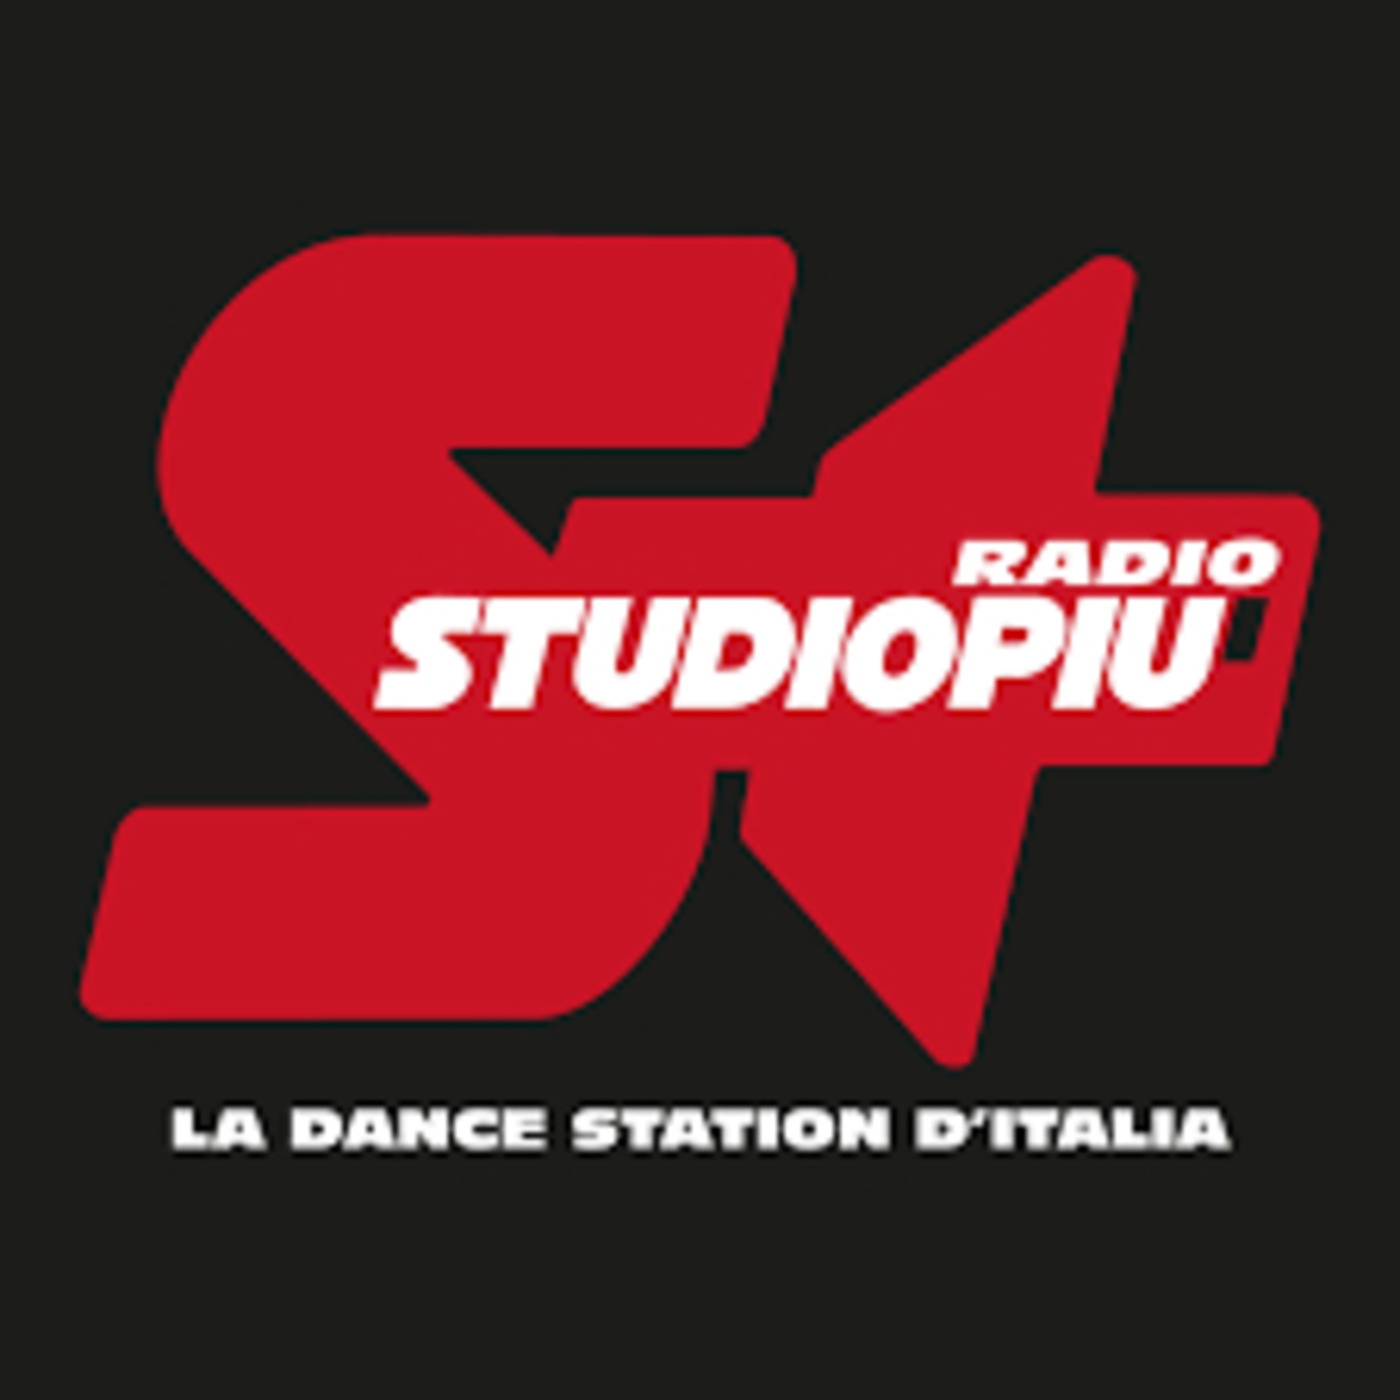 DIRETTA LIVE SHOW RADIO STUDIO PIU' - PARTY TIME VERSIONE MASHUP DEL 27 SETTEMBRE 2019